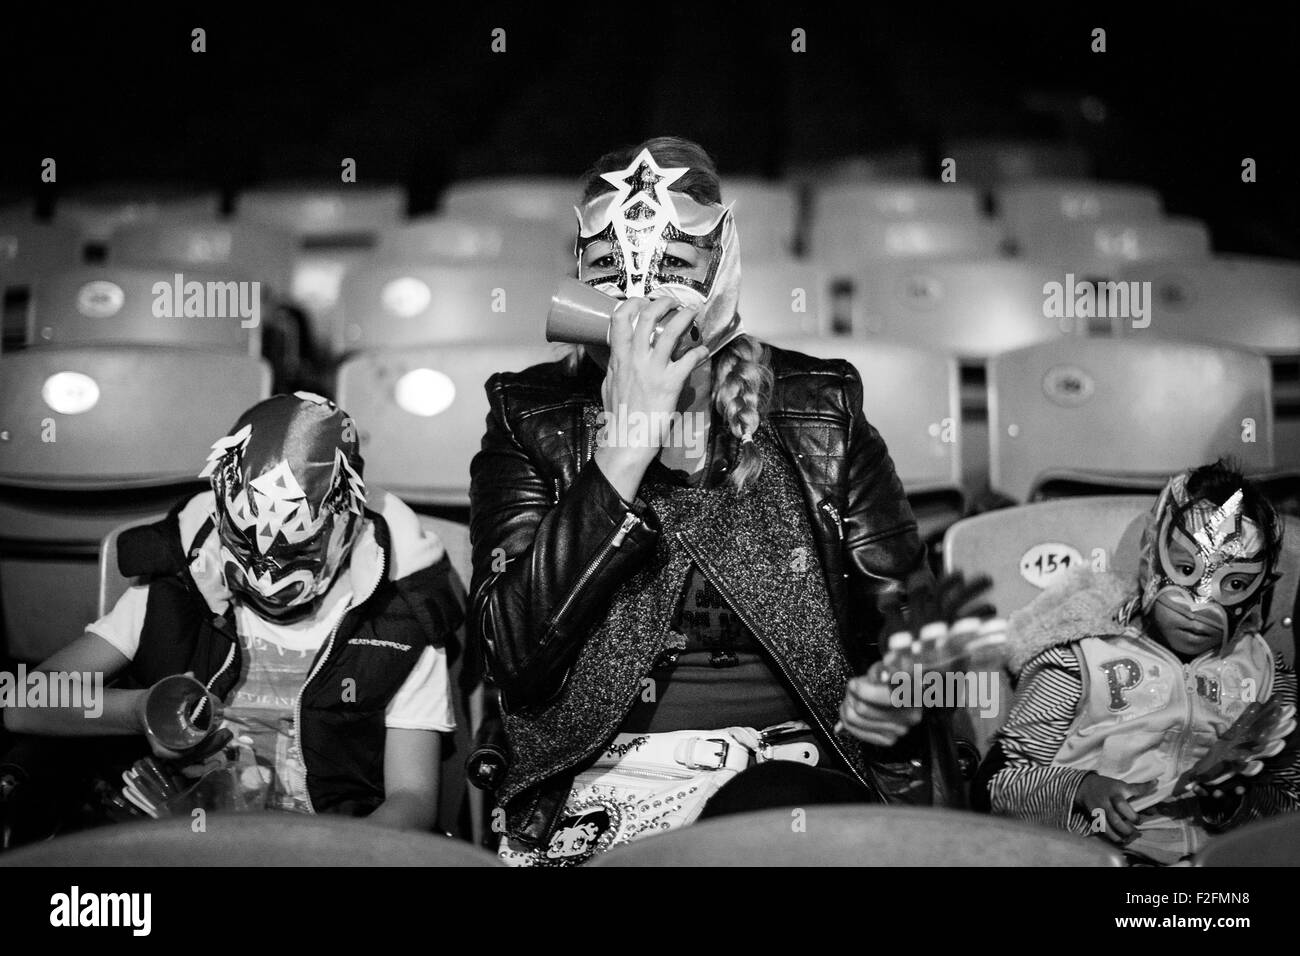 (150918) -- CITTÀ DEL MESSICO, Sett. 18, 2015 (Xinhua) -- i ventilatori indossare maschere reagiscono durante una lucha libre a Arena Messico a Città del Messico, capitale del Messico, sul Sett. 8, 2015. Lucha Libre è messicana autentica wrestling libero e caratteristiche di uomini forti nella misteriosa e maschere elaborate. Luchador Triton, 28 anni, è considerata come una delle giovani promesse del Mondo Wrestling Consiglio per la Lucha Libre. Arena Messico, noto anche come "Cattedrale di Lucha Libre", è la più grande arena del paese per questo tipo di partite. Nel 2015, l'Arena Messico ospiterà la 82anniversario della CMLL. (Xinhua/Pedro Me Foto Stock